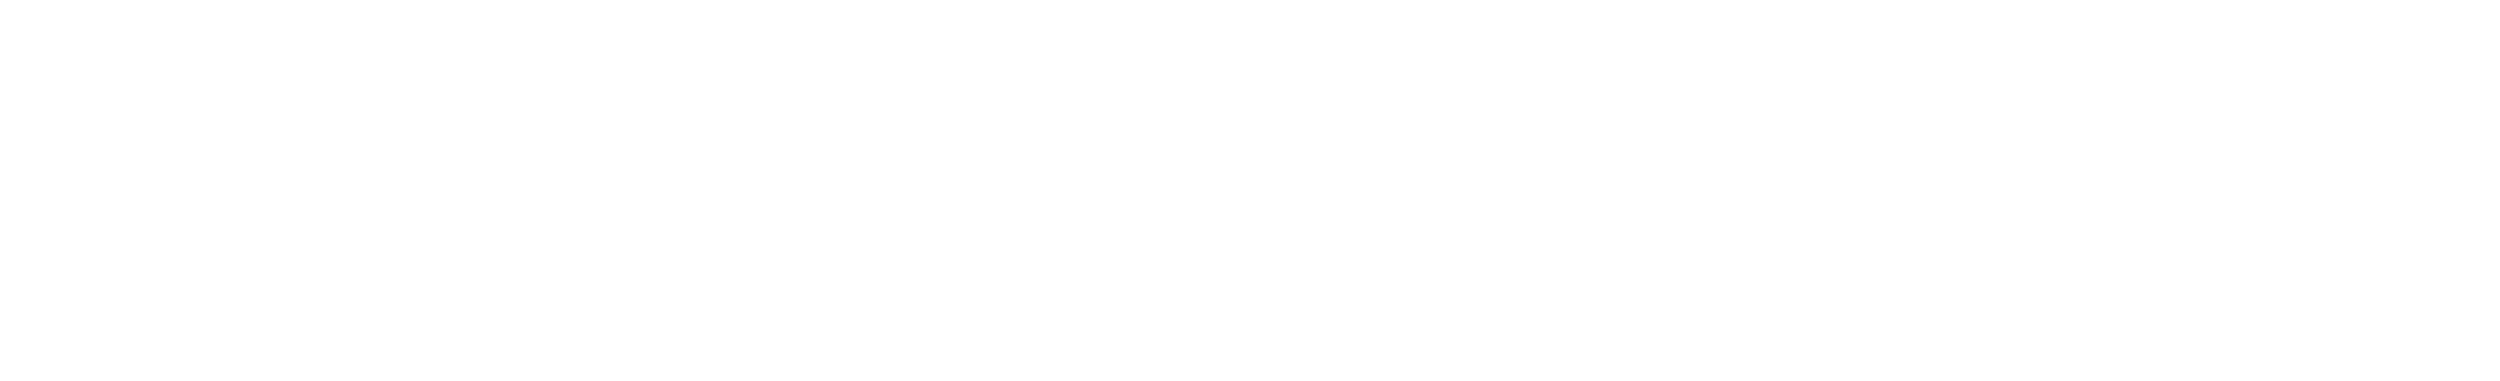 nationalsignageaffiliates